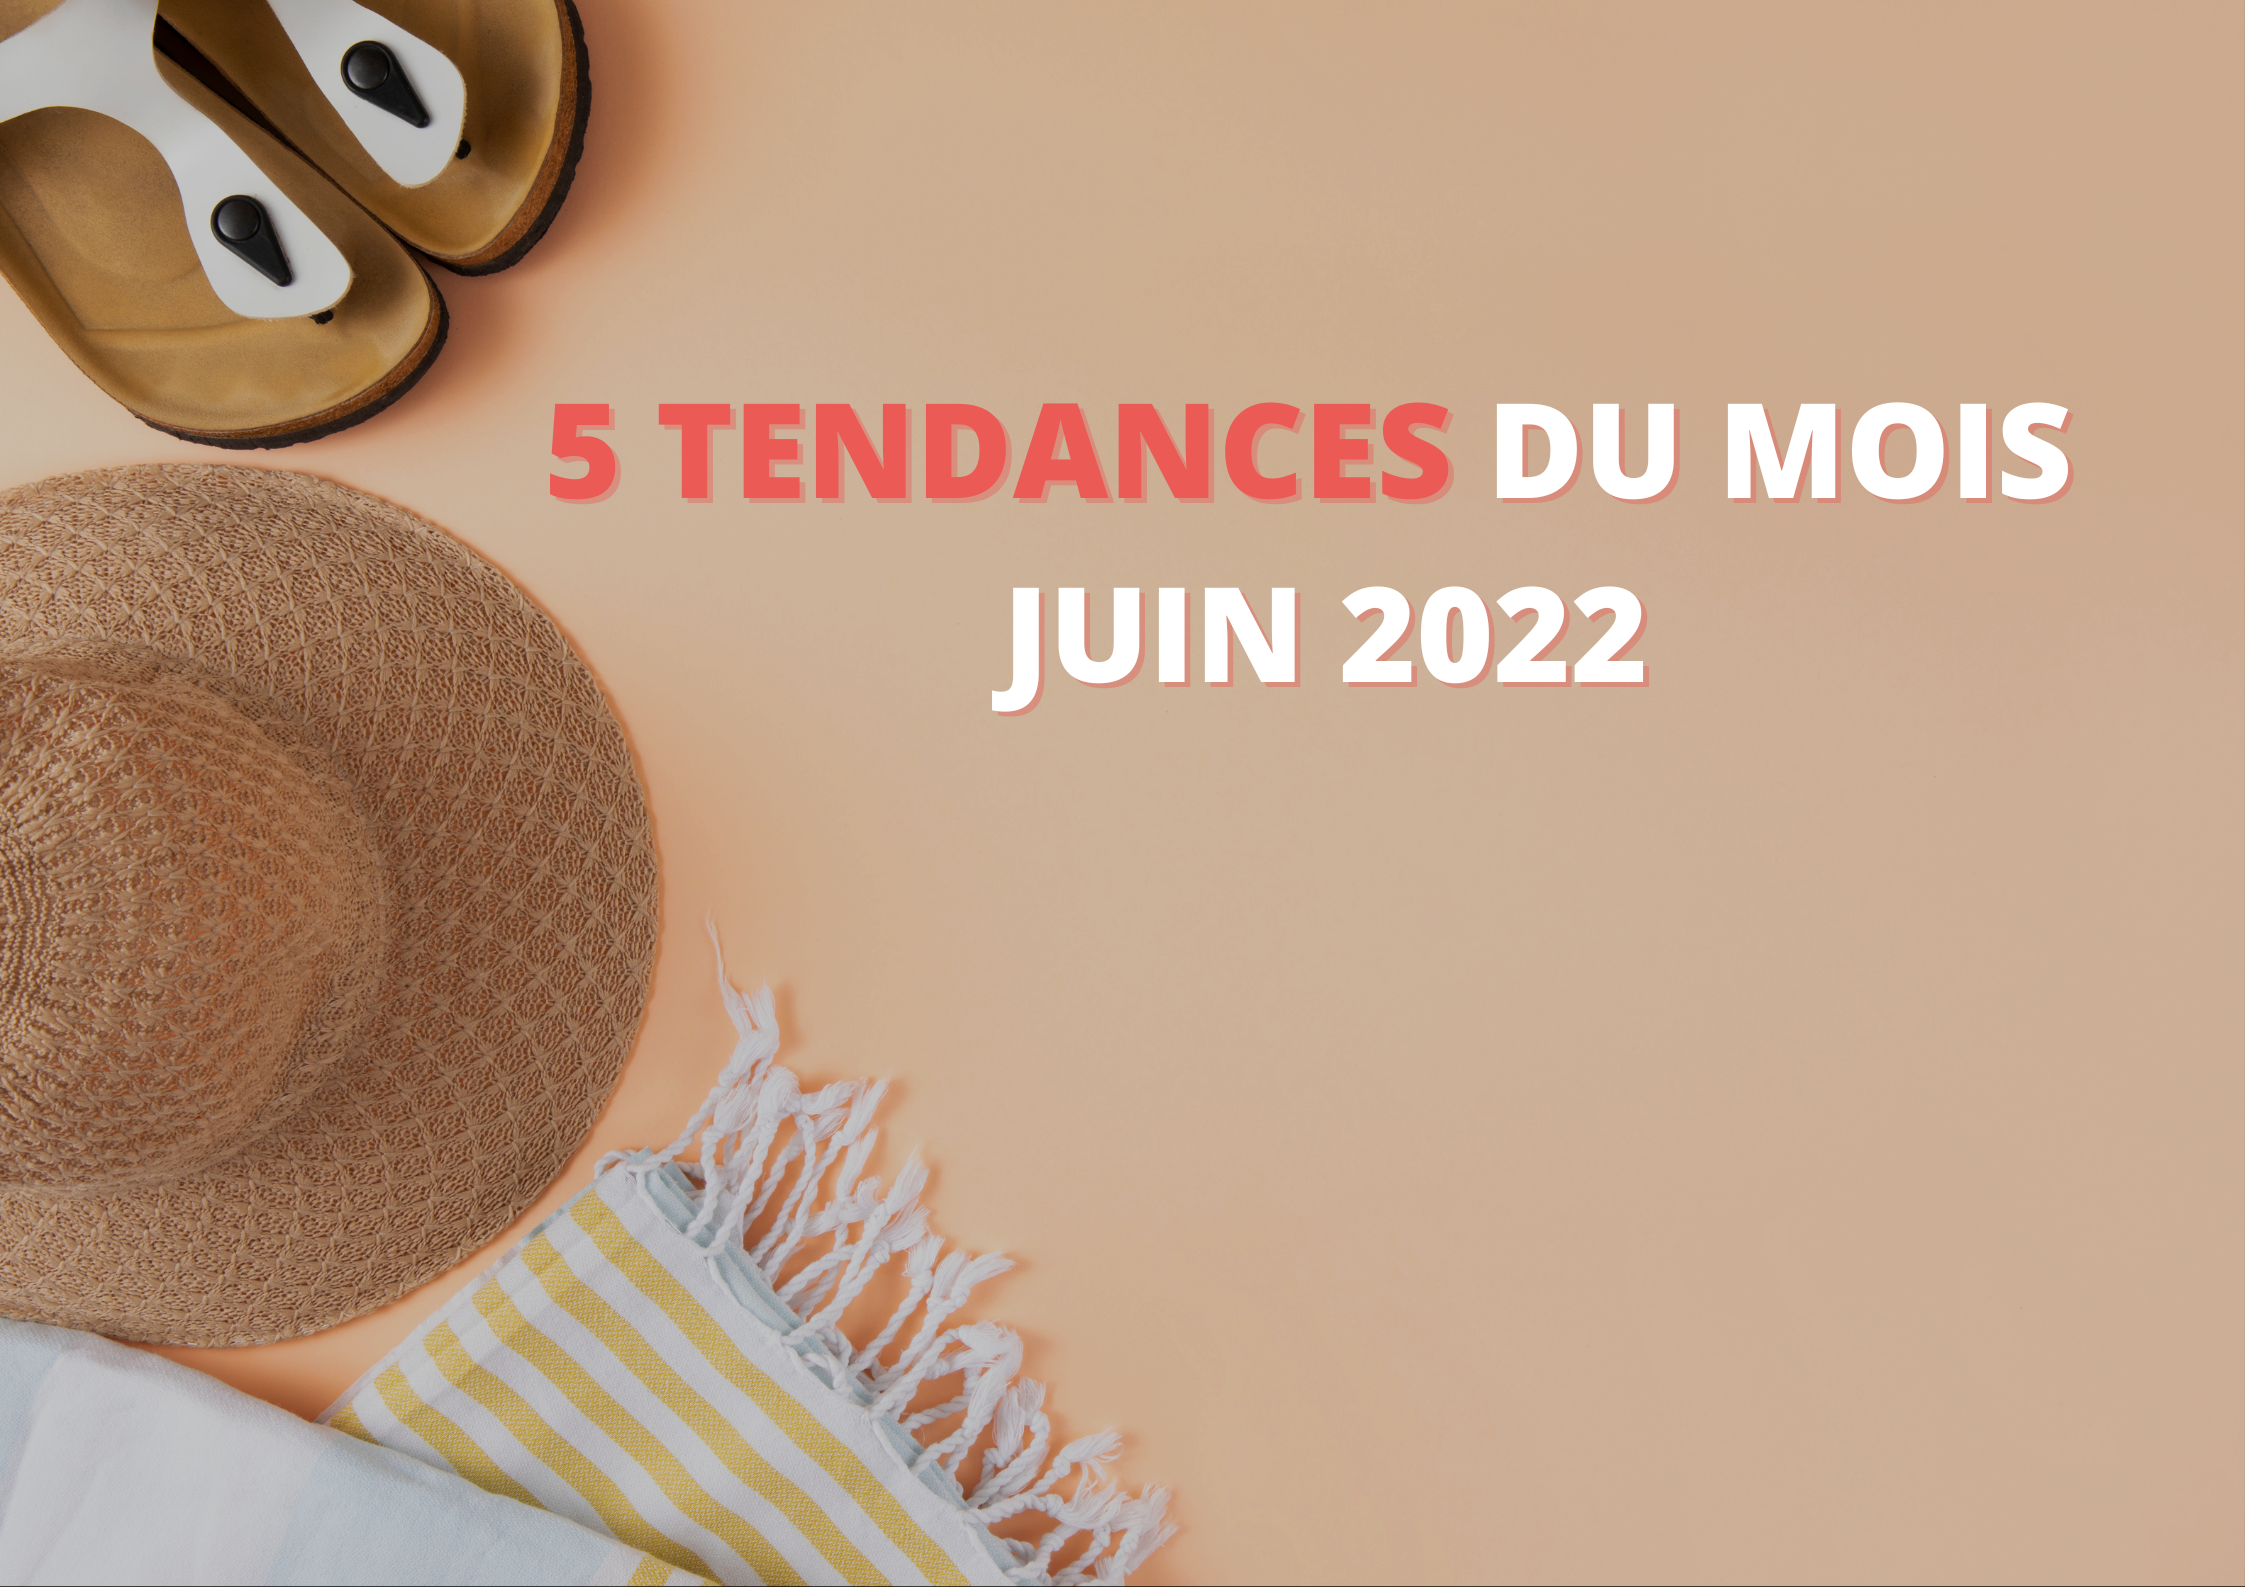 5 Tendances du mois - Juin 2022